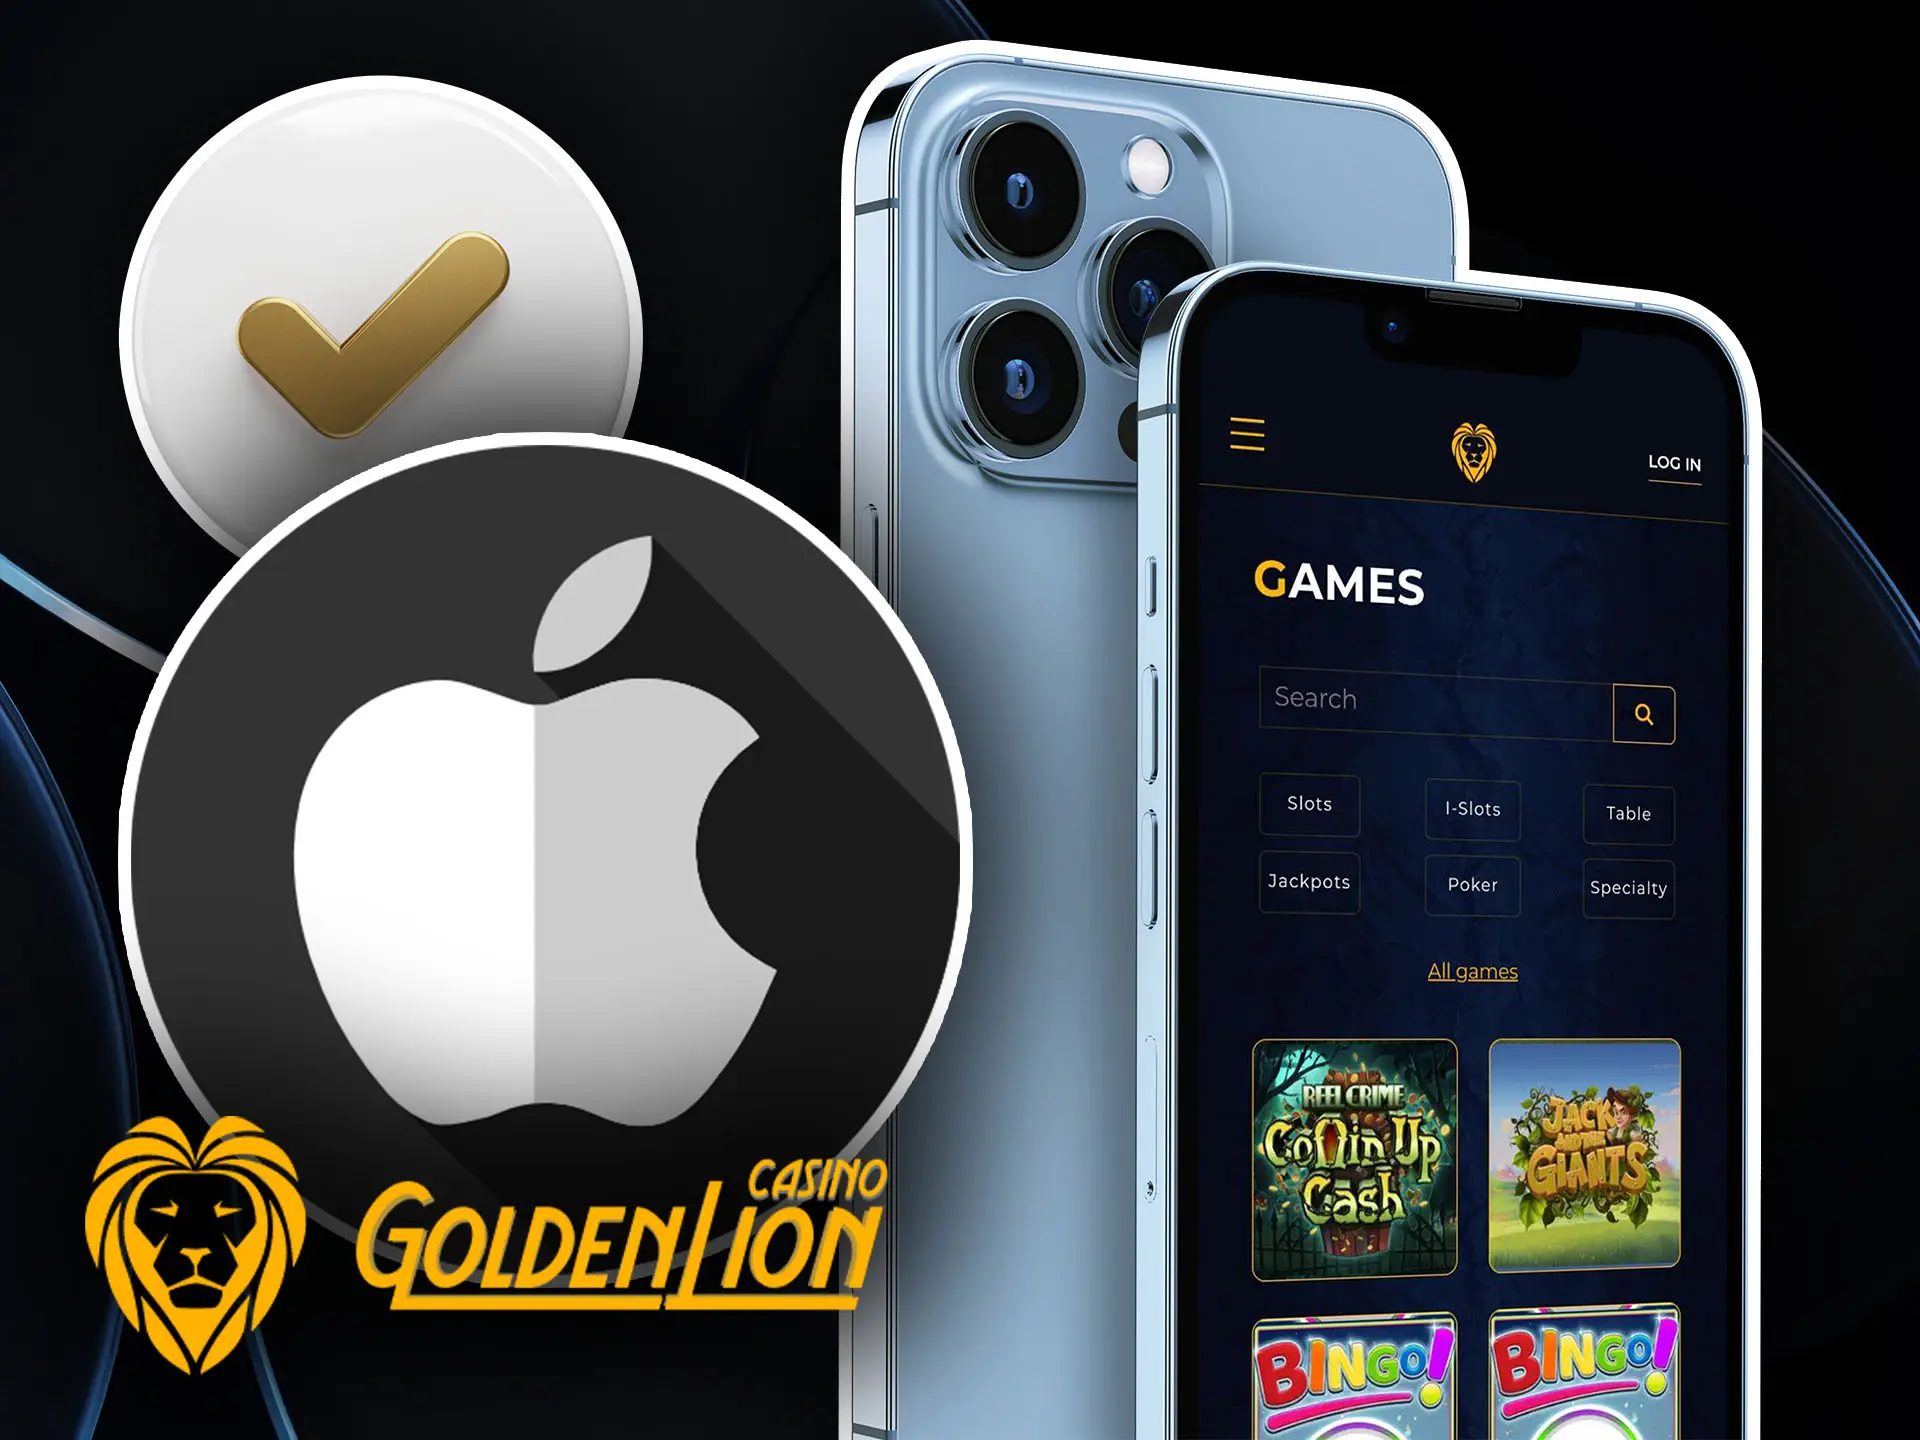 Mobile application for Golden Lion Casino.